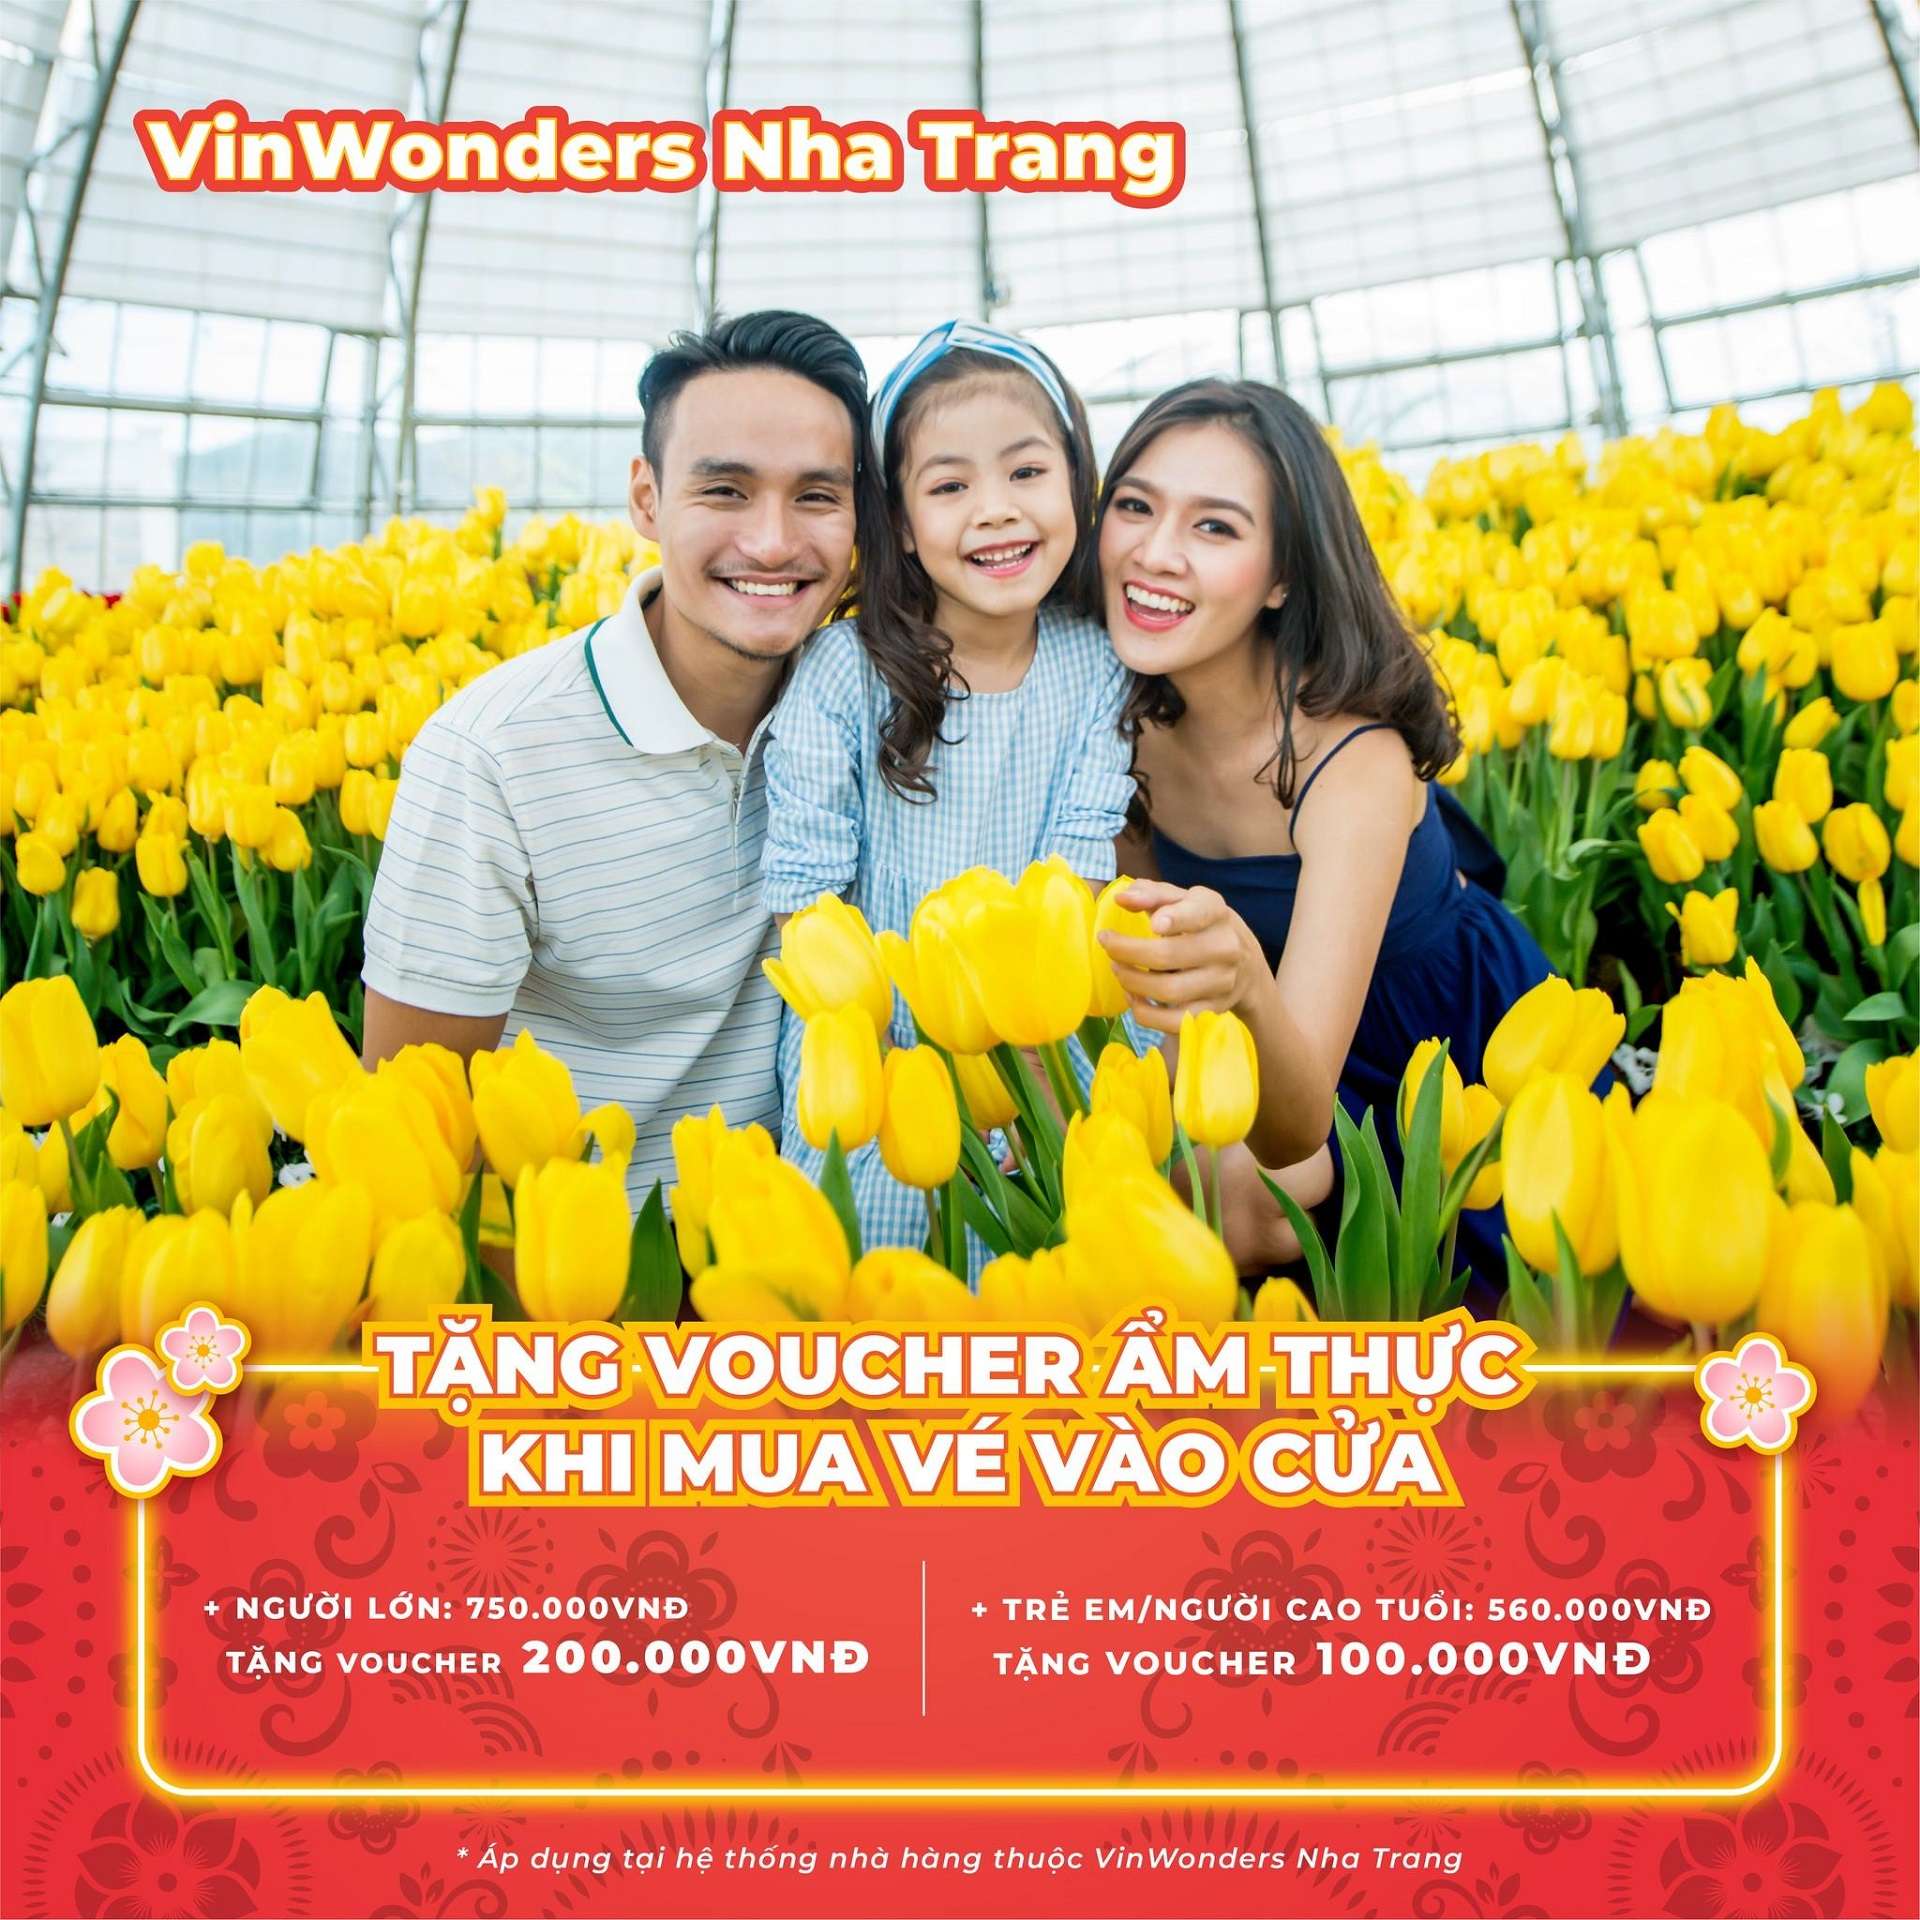 lịch hoạt động và ưu đãi VinWonders Nha Trang